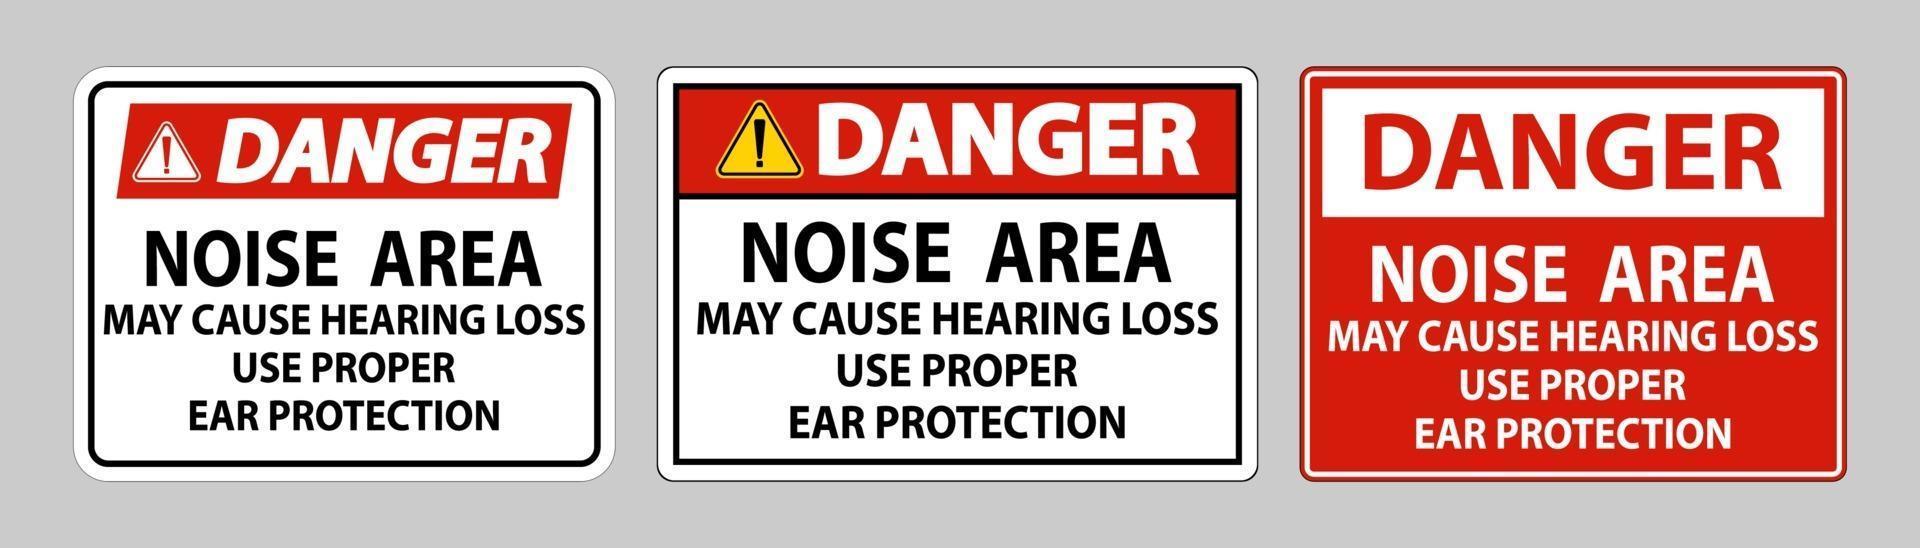 gevaarsteken lawaai gebied kan gehoorbeschadiging veroorzaken geschikte gehoorbescherming gebruiken vector